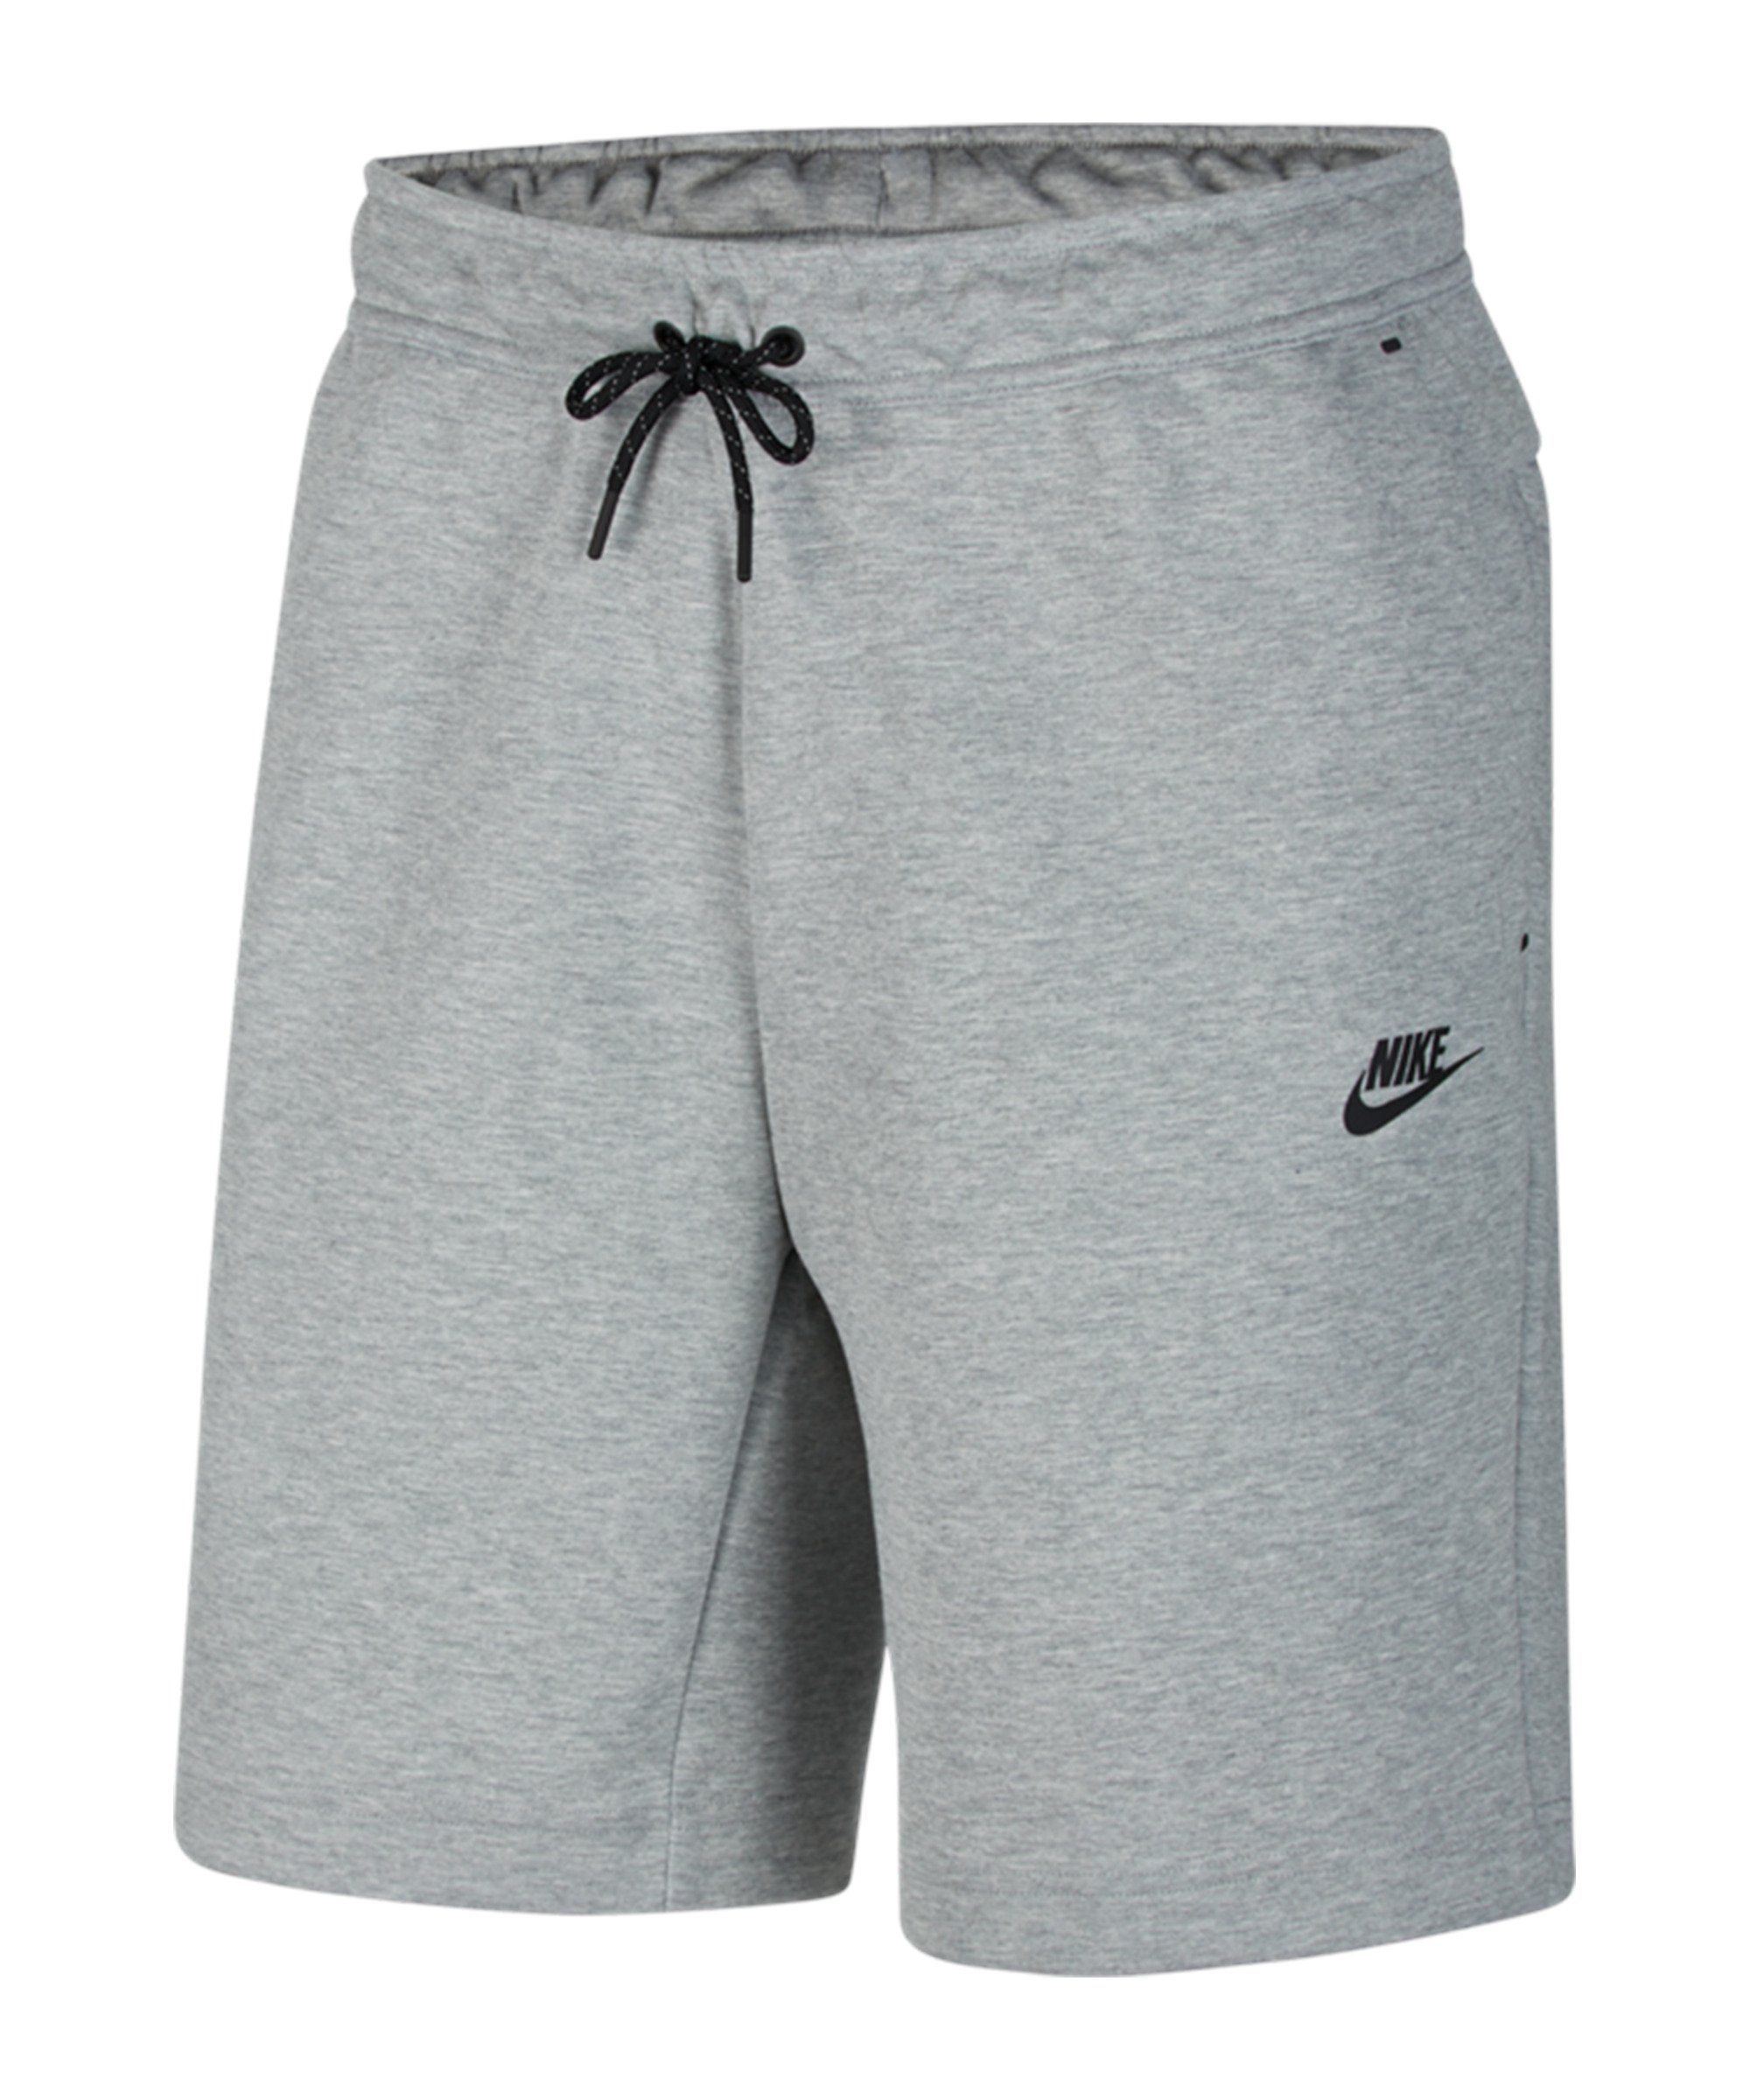 Nike Sportswear Jogginghose Tech Fleece Short grauschwarz